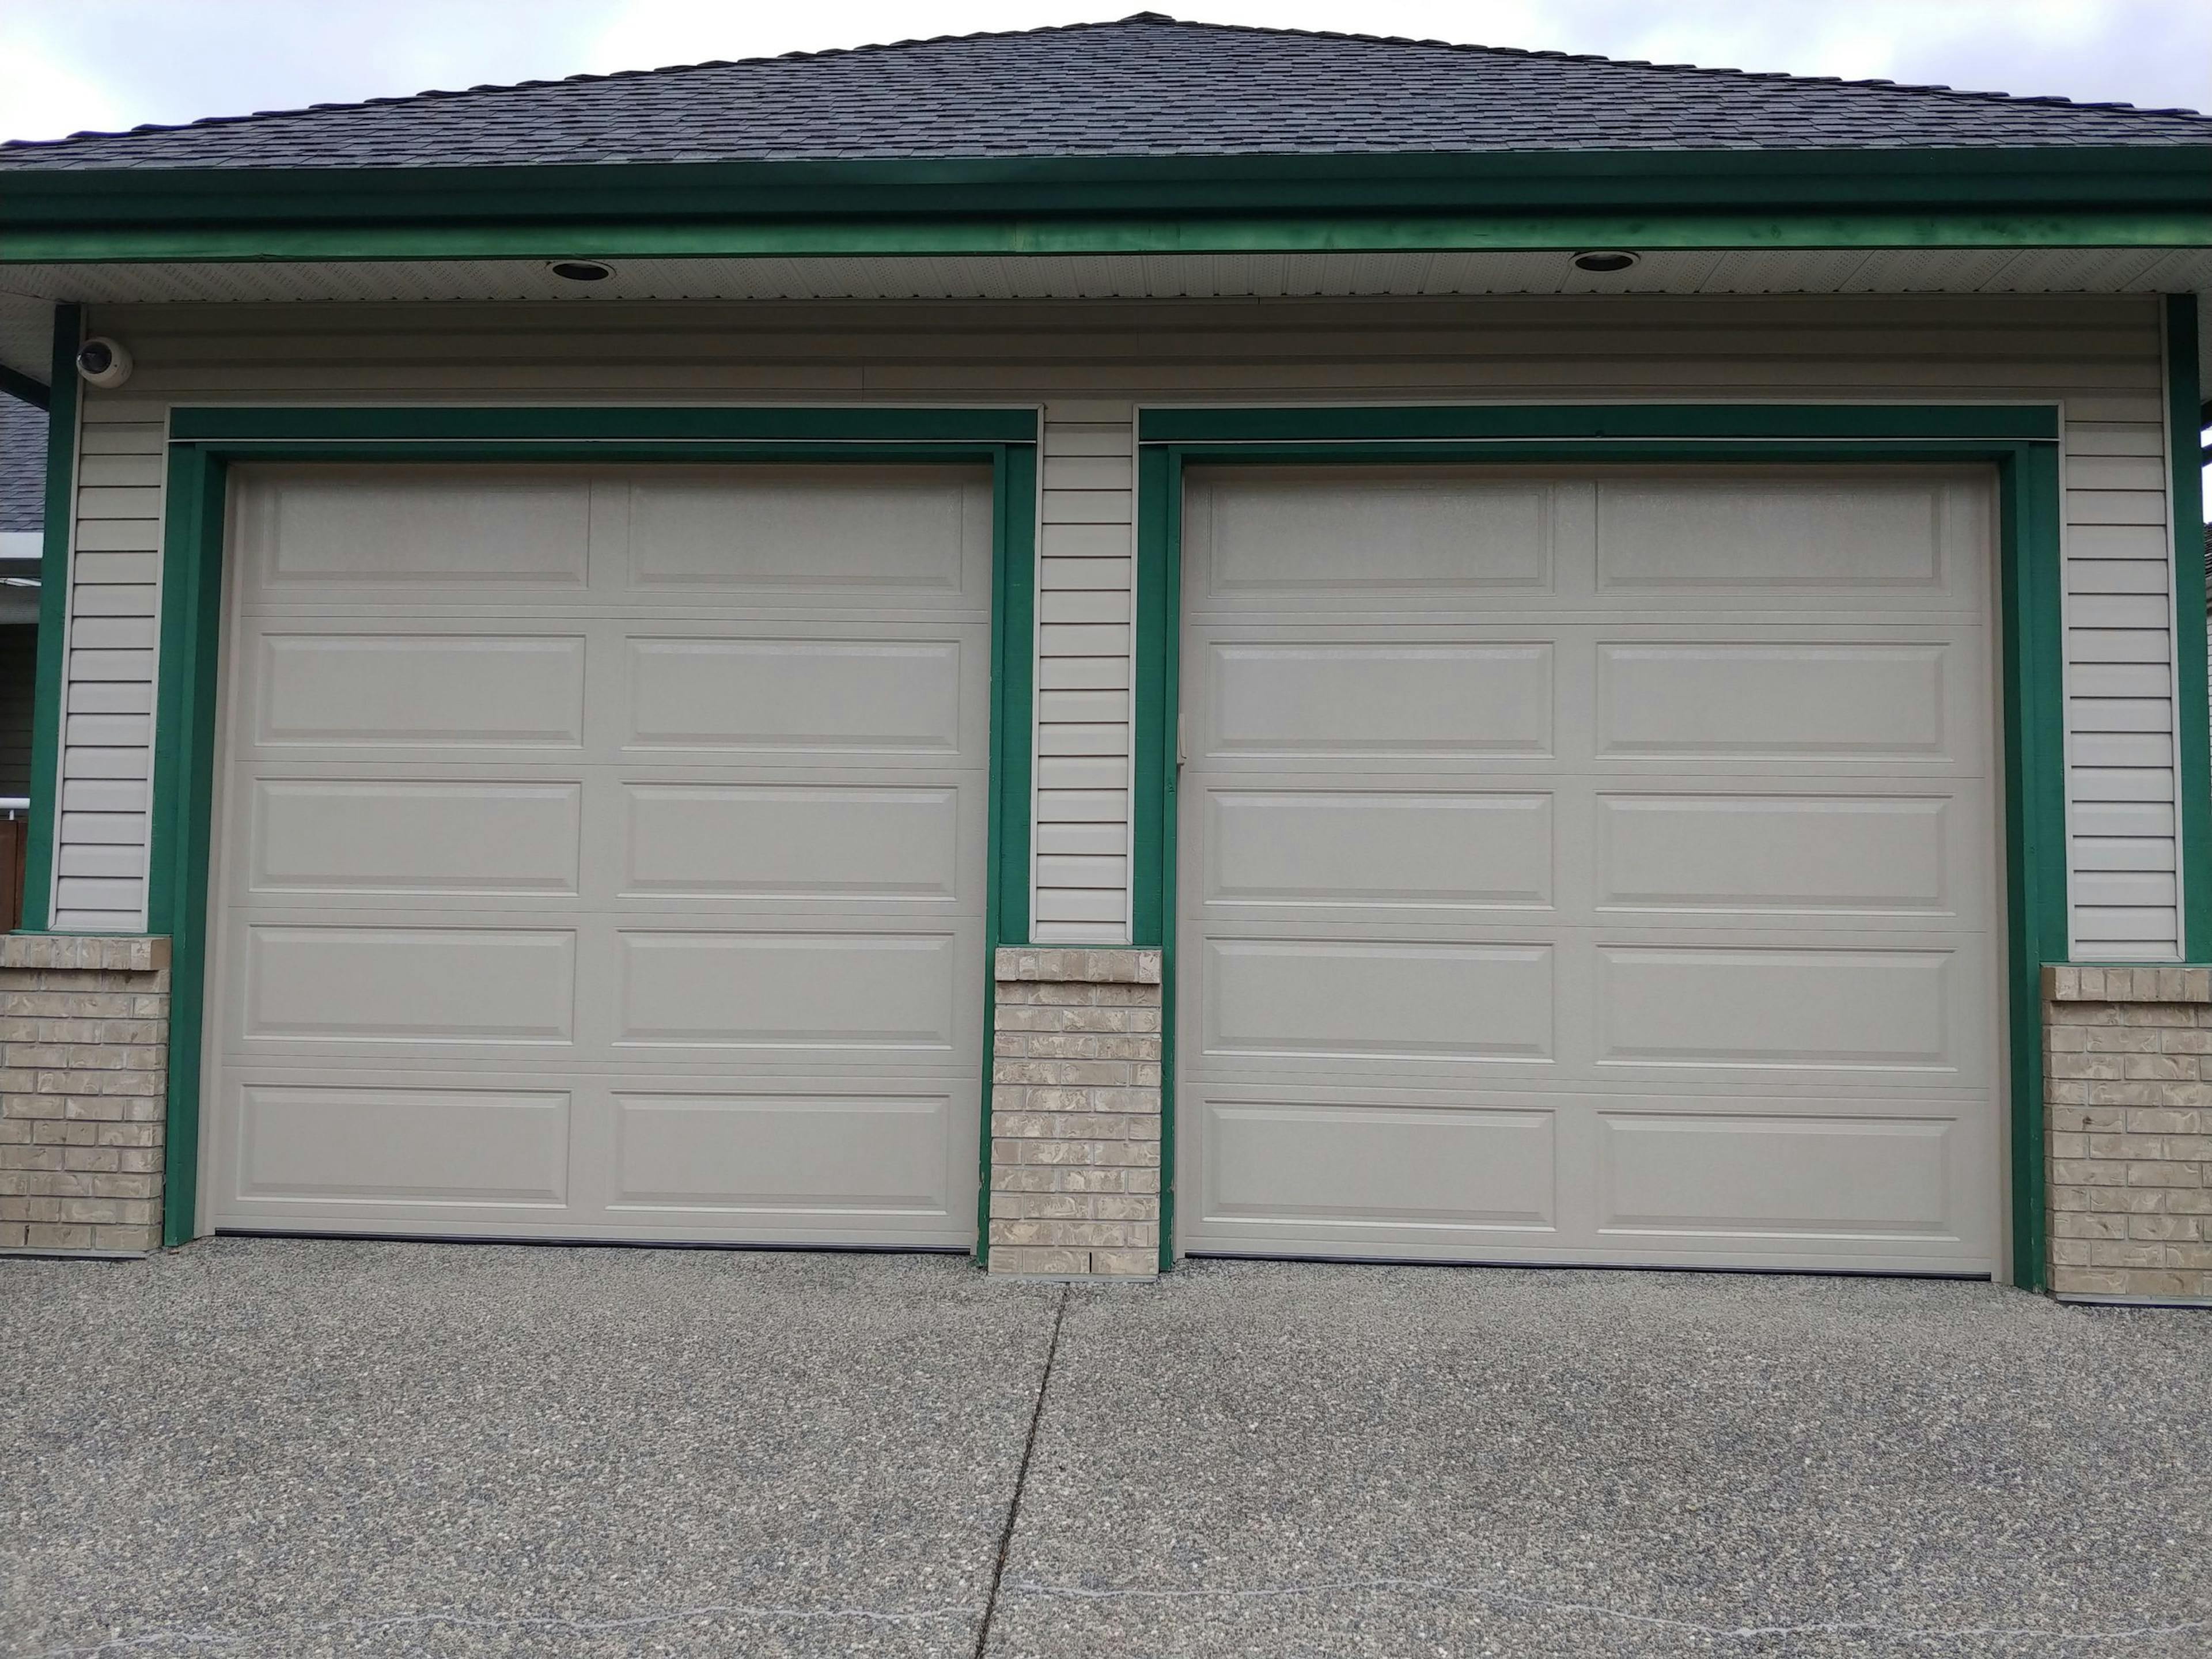 Cream colored garage doors